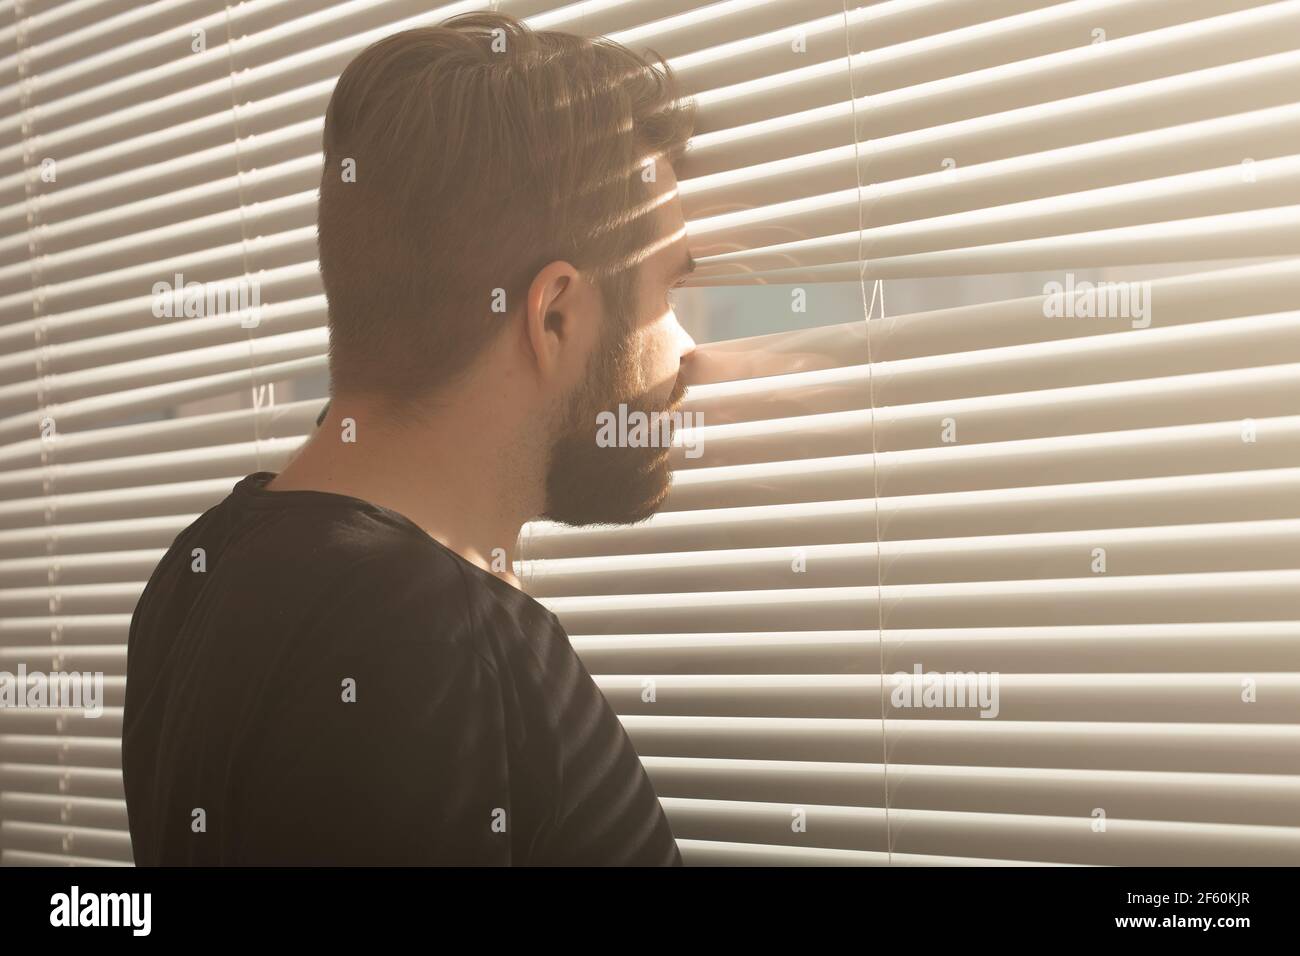 Rückansicht eines jungen Mannes mit Bart, der durch ein Loch in die  Fensterläden blickt und auf die Straße blickt. Überwachung und Neugier  Konzept Stockfotografie - Alamy